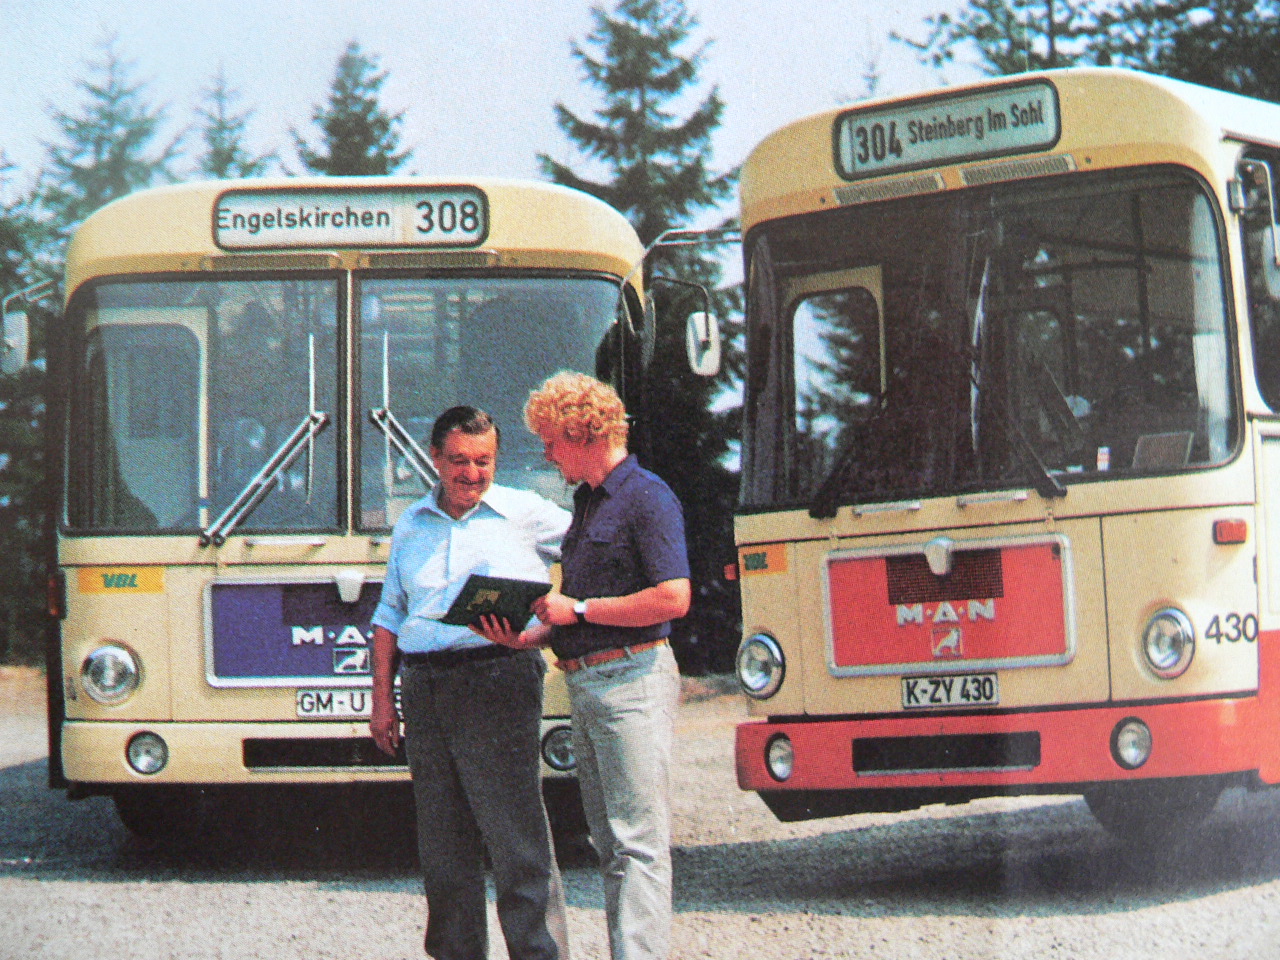 Auf dem Bild sind zwei Busse der Firma MAN sowie zwei Mitarbeiter, die sich unterhalten, zu sehen